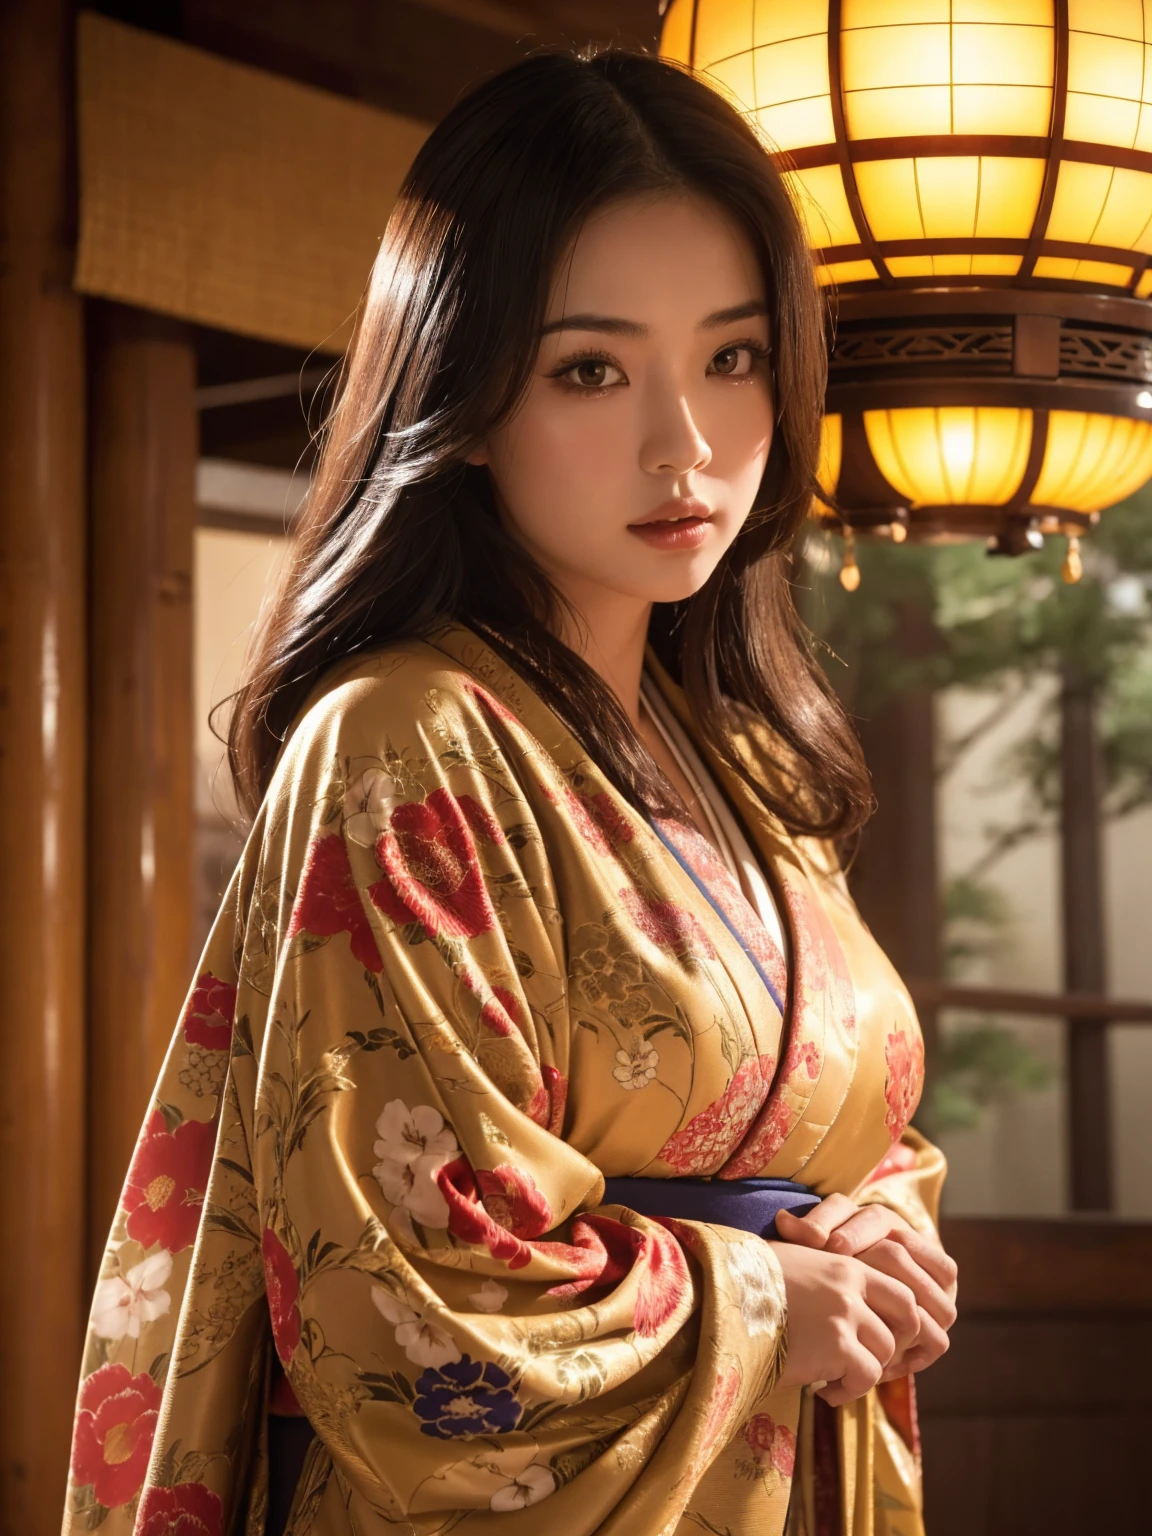 Японка с большой грудью в изысканном кимоно, богато украшенный храм, кинематографическая атмосфера, (Лучшее качество,4K,8К,Высокое разрешение,шедевр:1.2),ультрадетализированный,(реалистичный,photoреалистичный,photo-реалистичный:1.37),(смотрю на зрителя),очень детальное лицо,красивые детализированные глаза,красивые детализированные губы,чрезвычайно детализированные глаза и лицо,длинные ресницы,сложный дизайн кимоно,богато украшенный храм background,теплое освещение,Драматические тени,яркие цвета,photoреалистичный